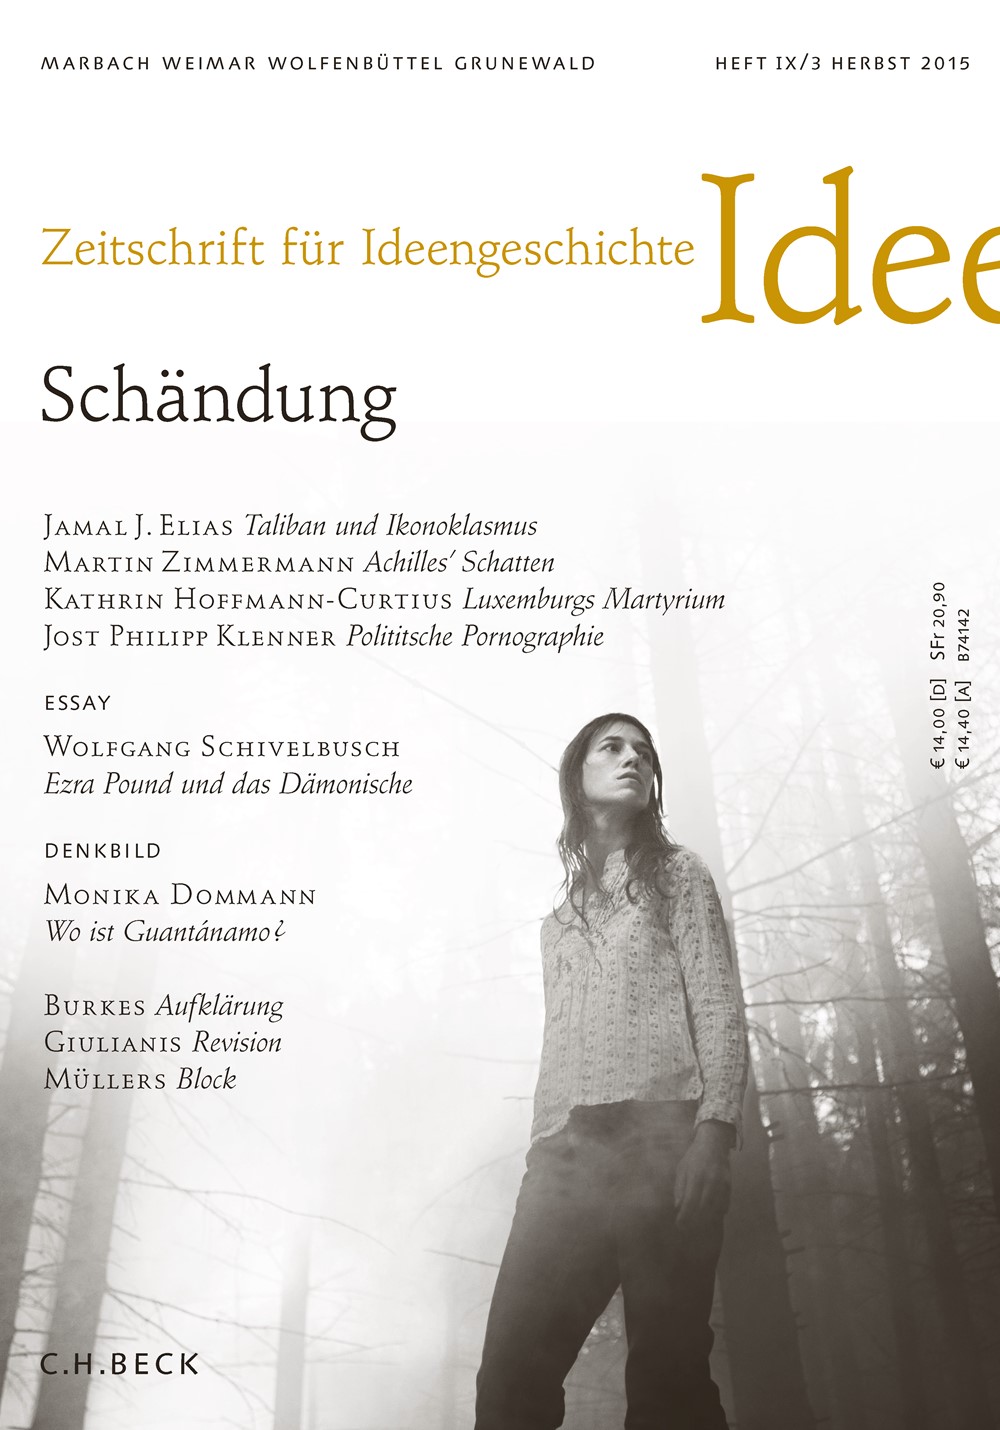 cover of Heft IX/3 Herbst 2015